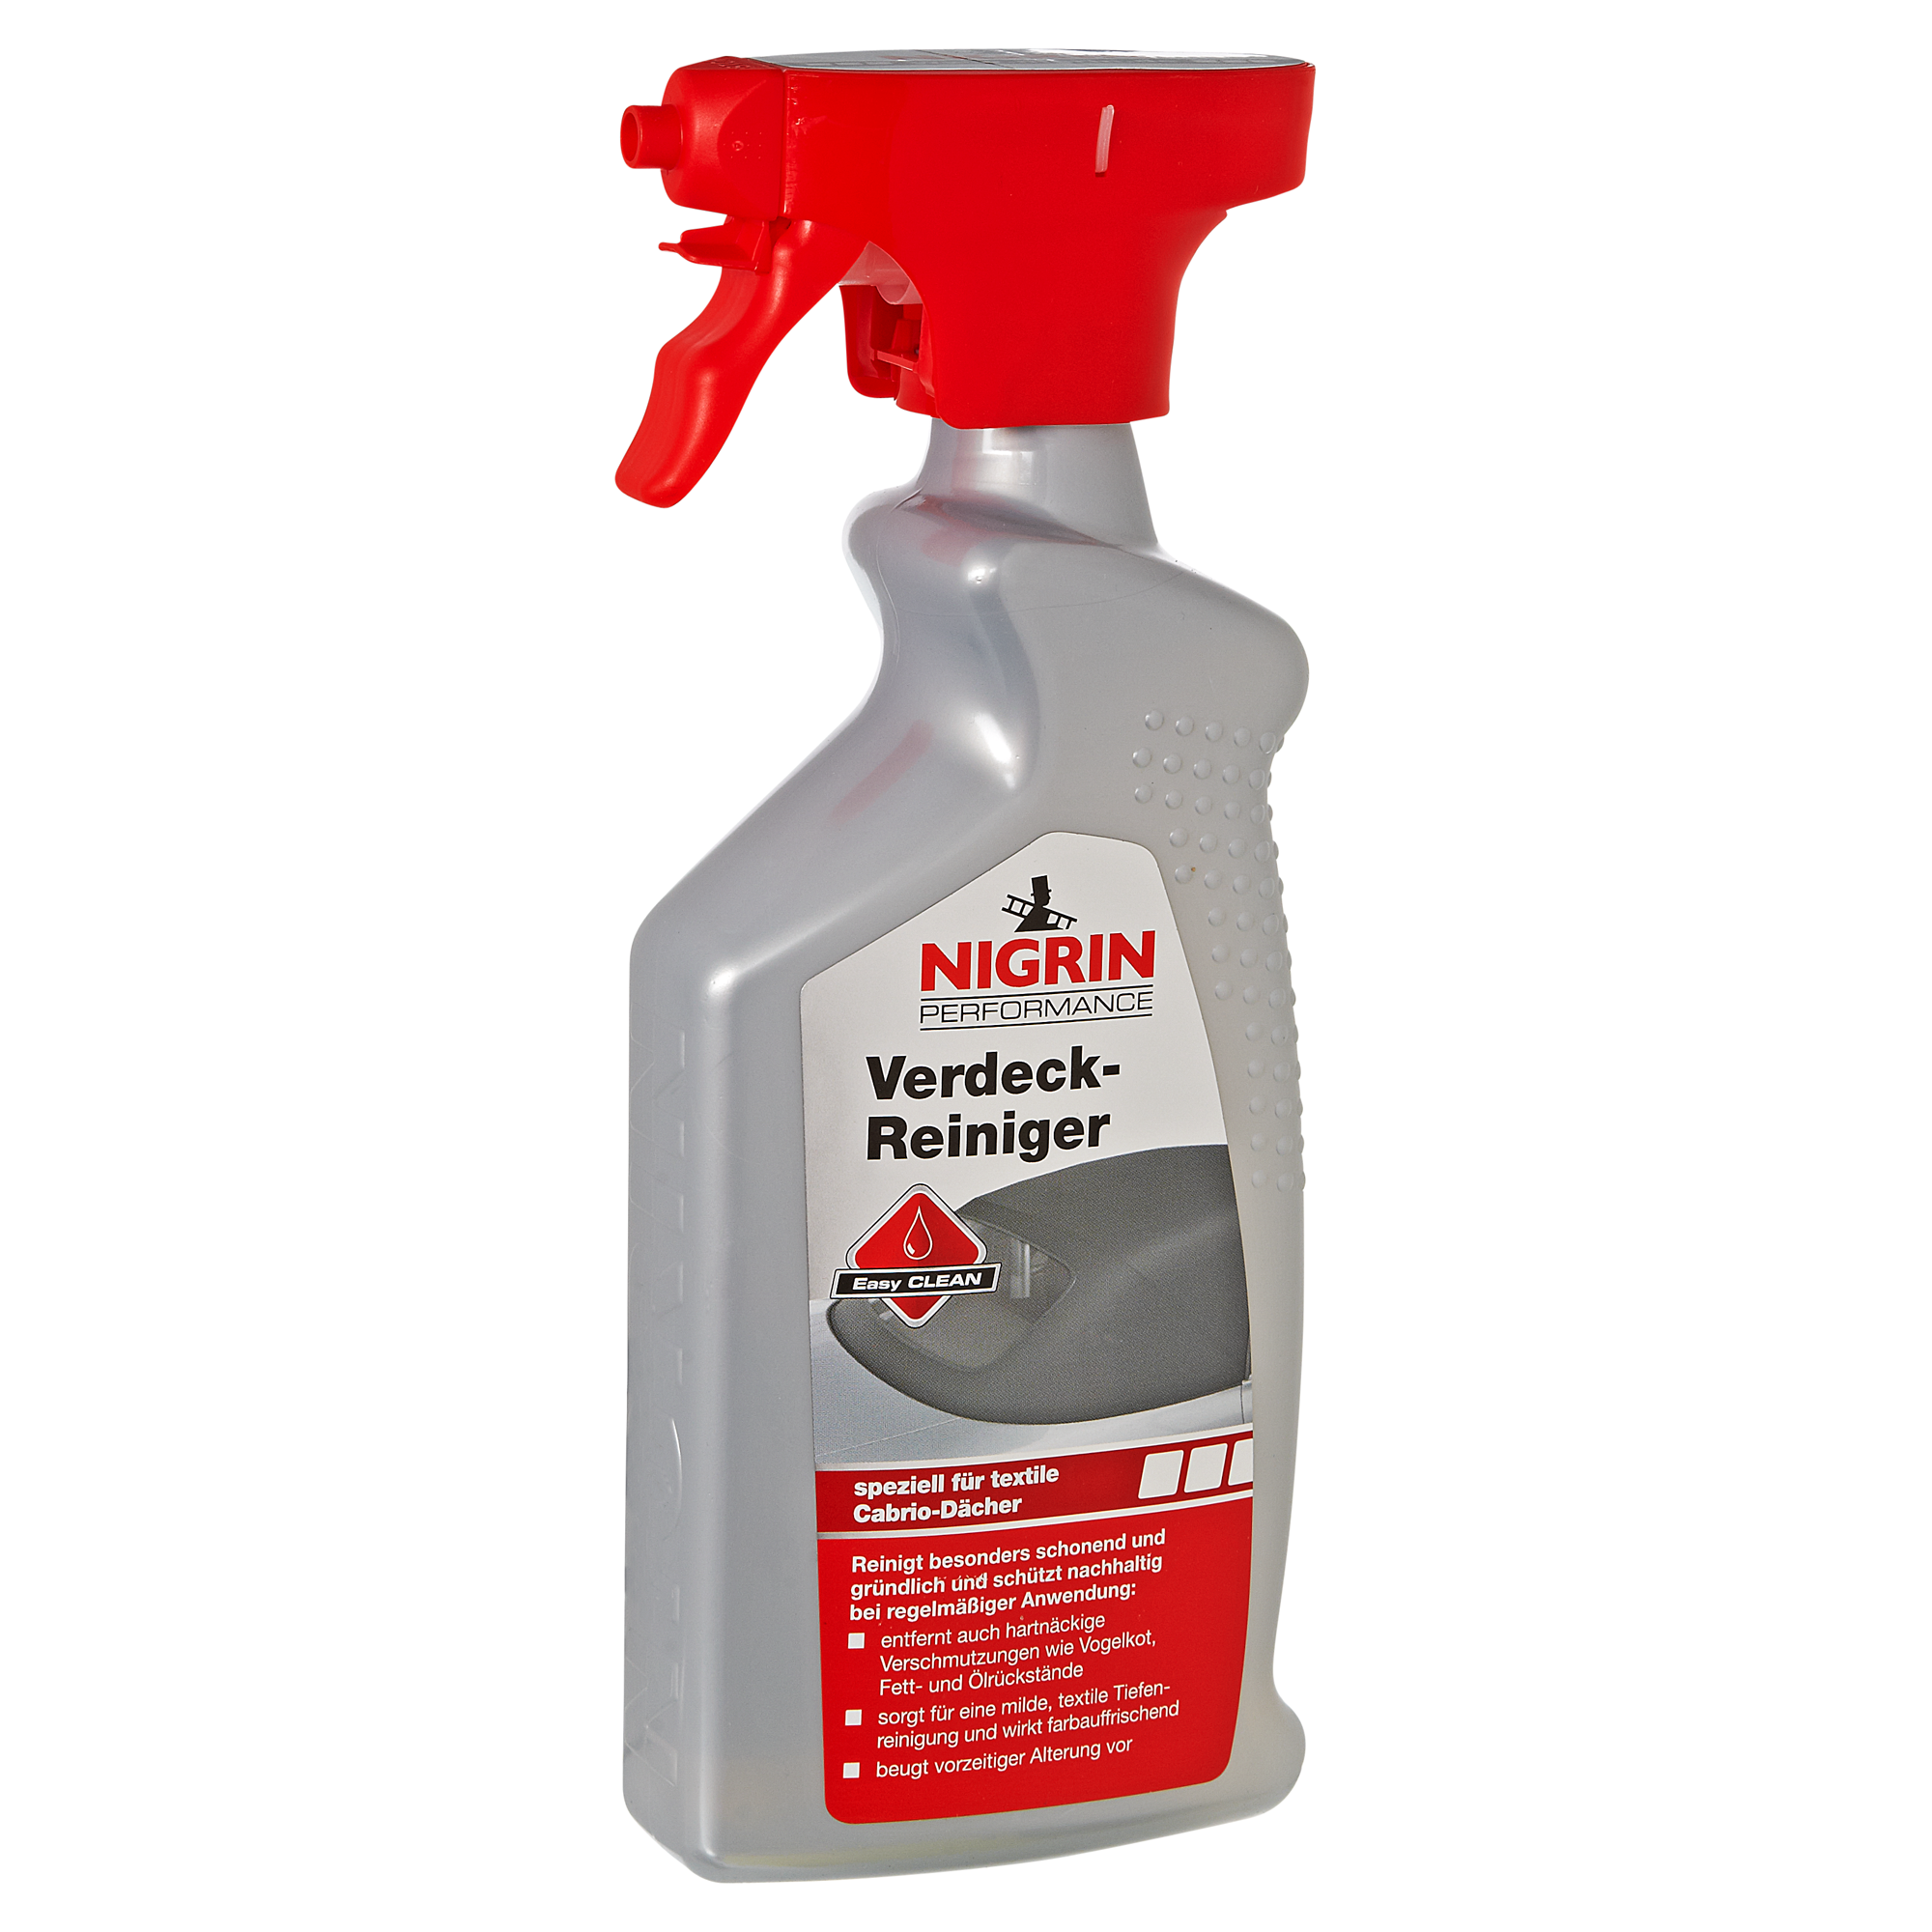 Nigrin Performance Verdeckreiniger speziell für textile Cabrio-Dächer 500 ml + product picture